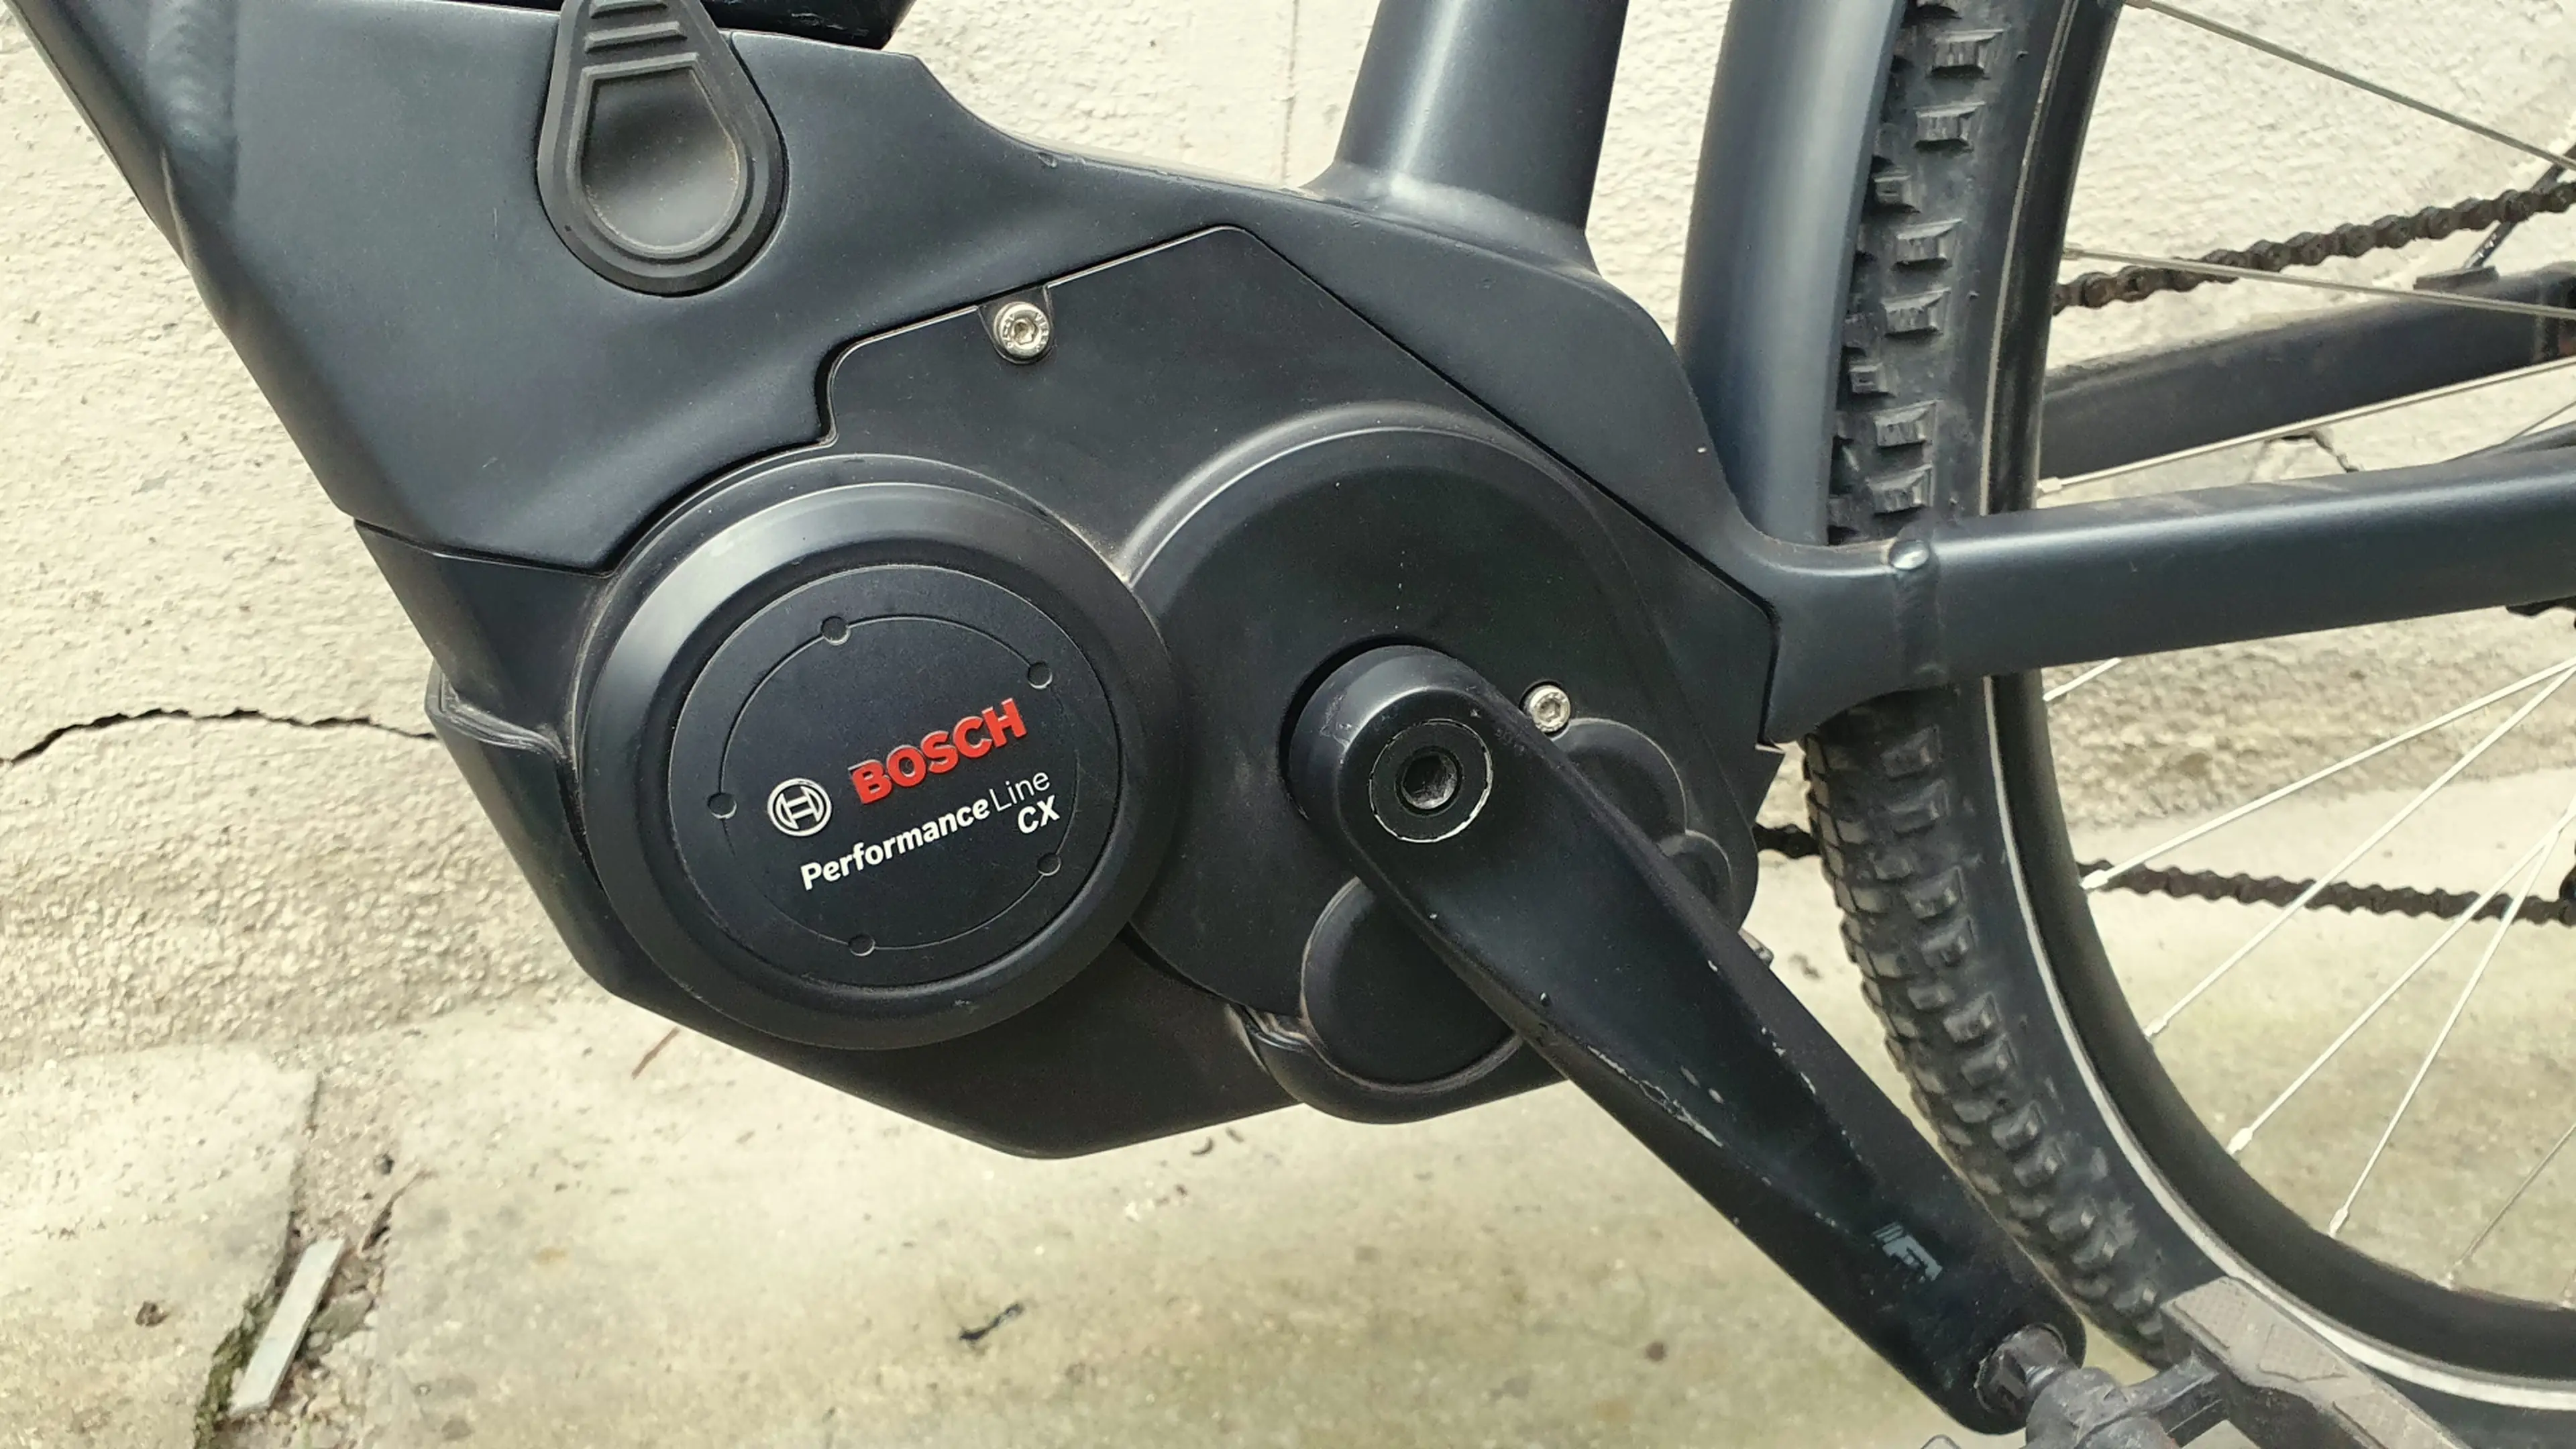 3. Bicicleta electrica Cube cu motor Bosch Performance Line CX